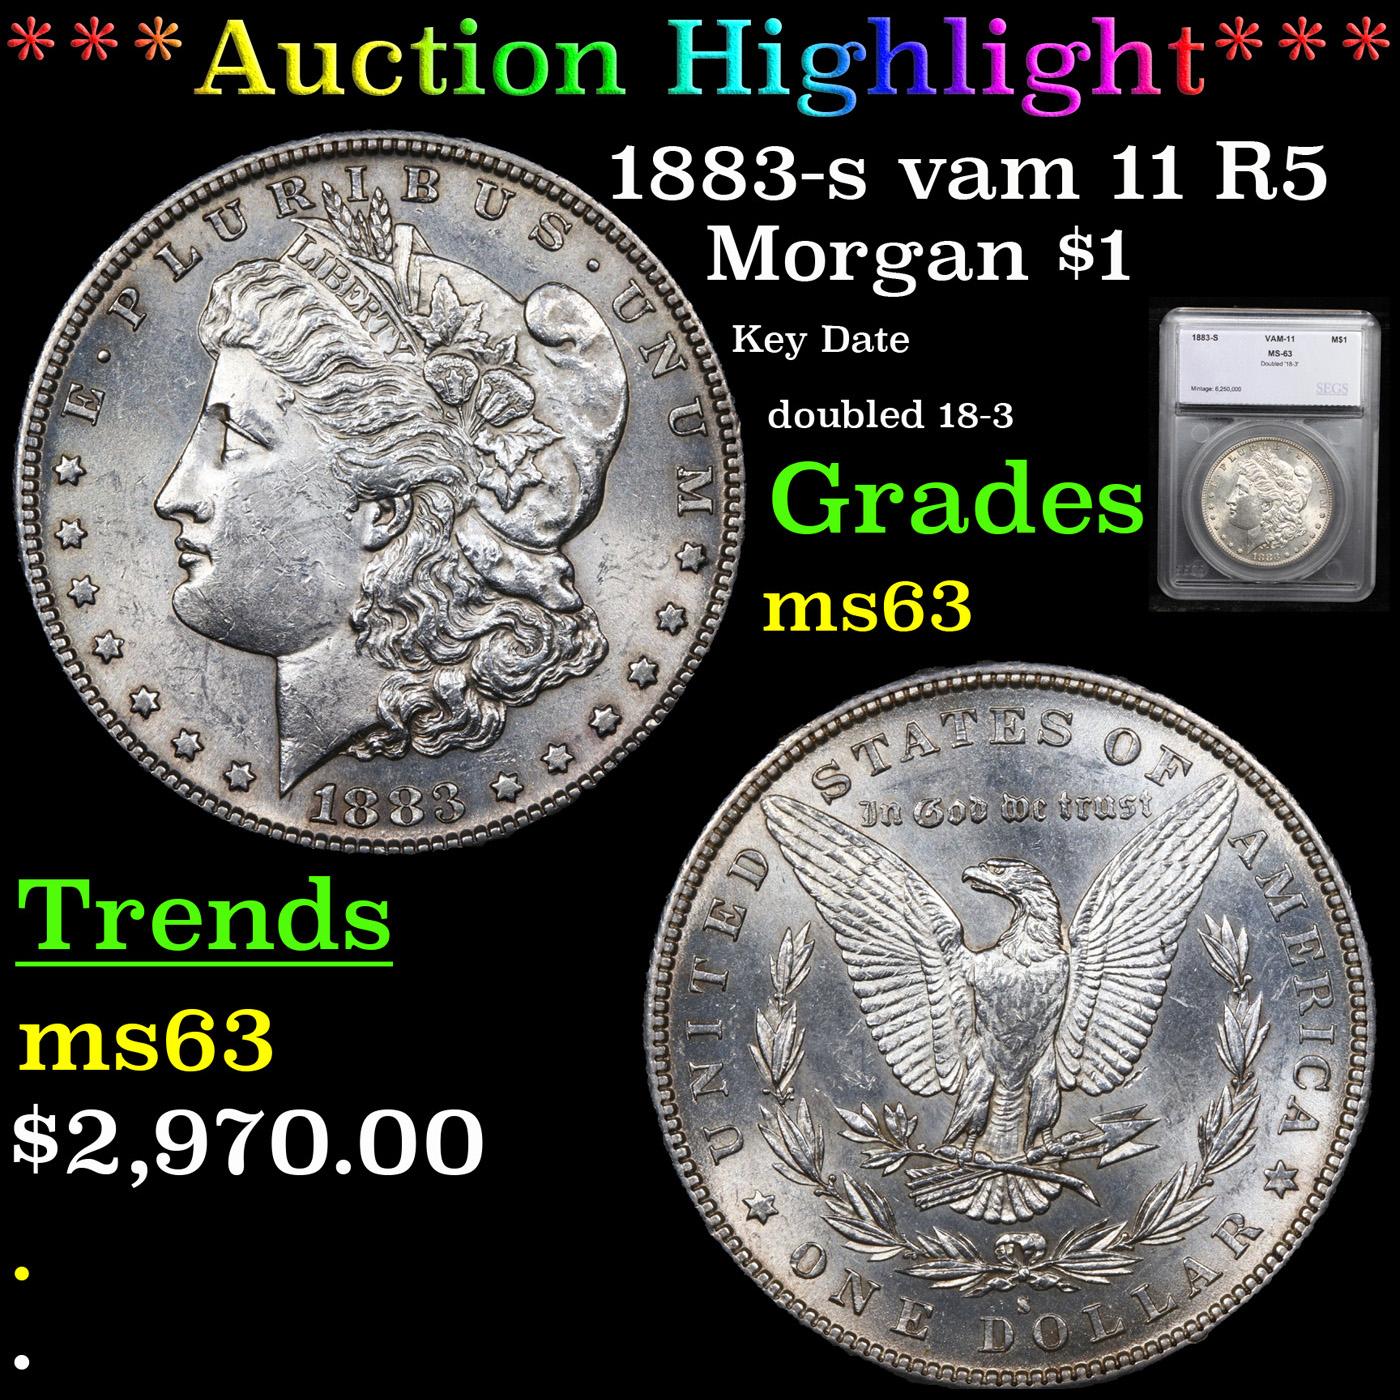 ***Auction Highlight*** 1883-s vam 11 R5 Morgan Dollar $1 Graded ms63 By SEGS (fc)